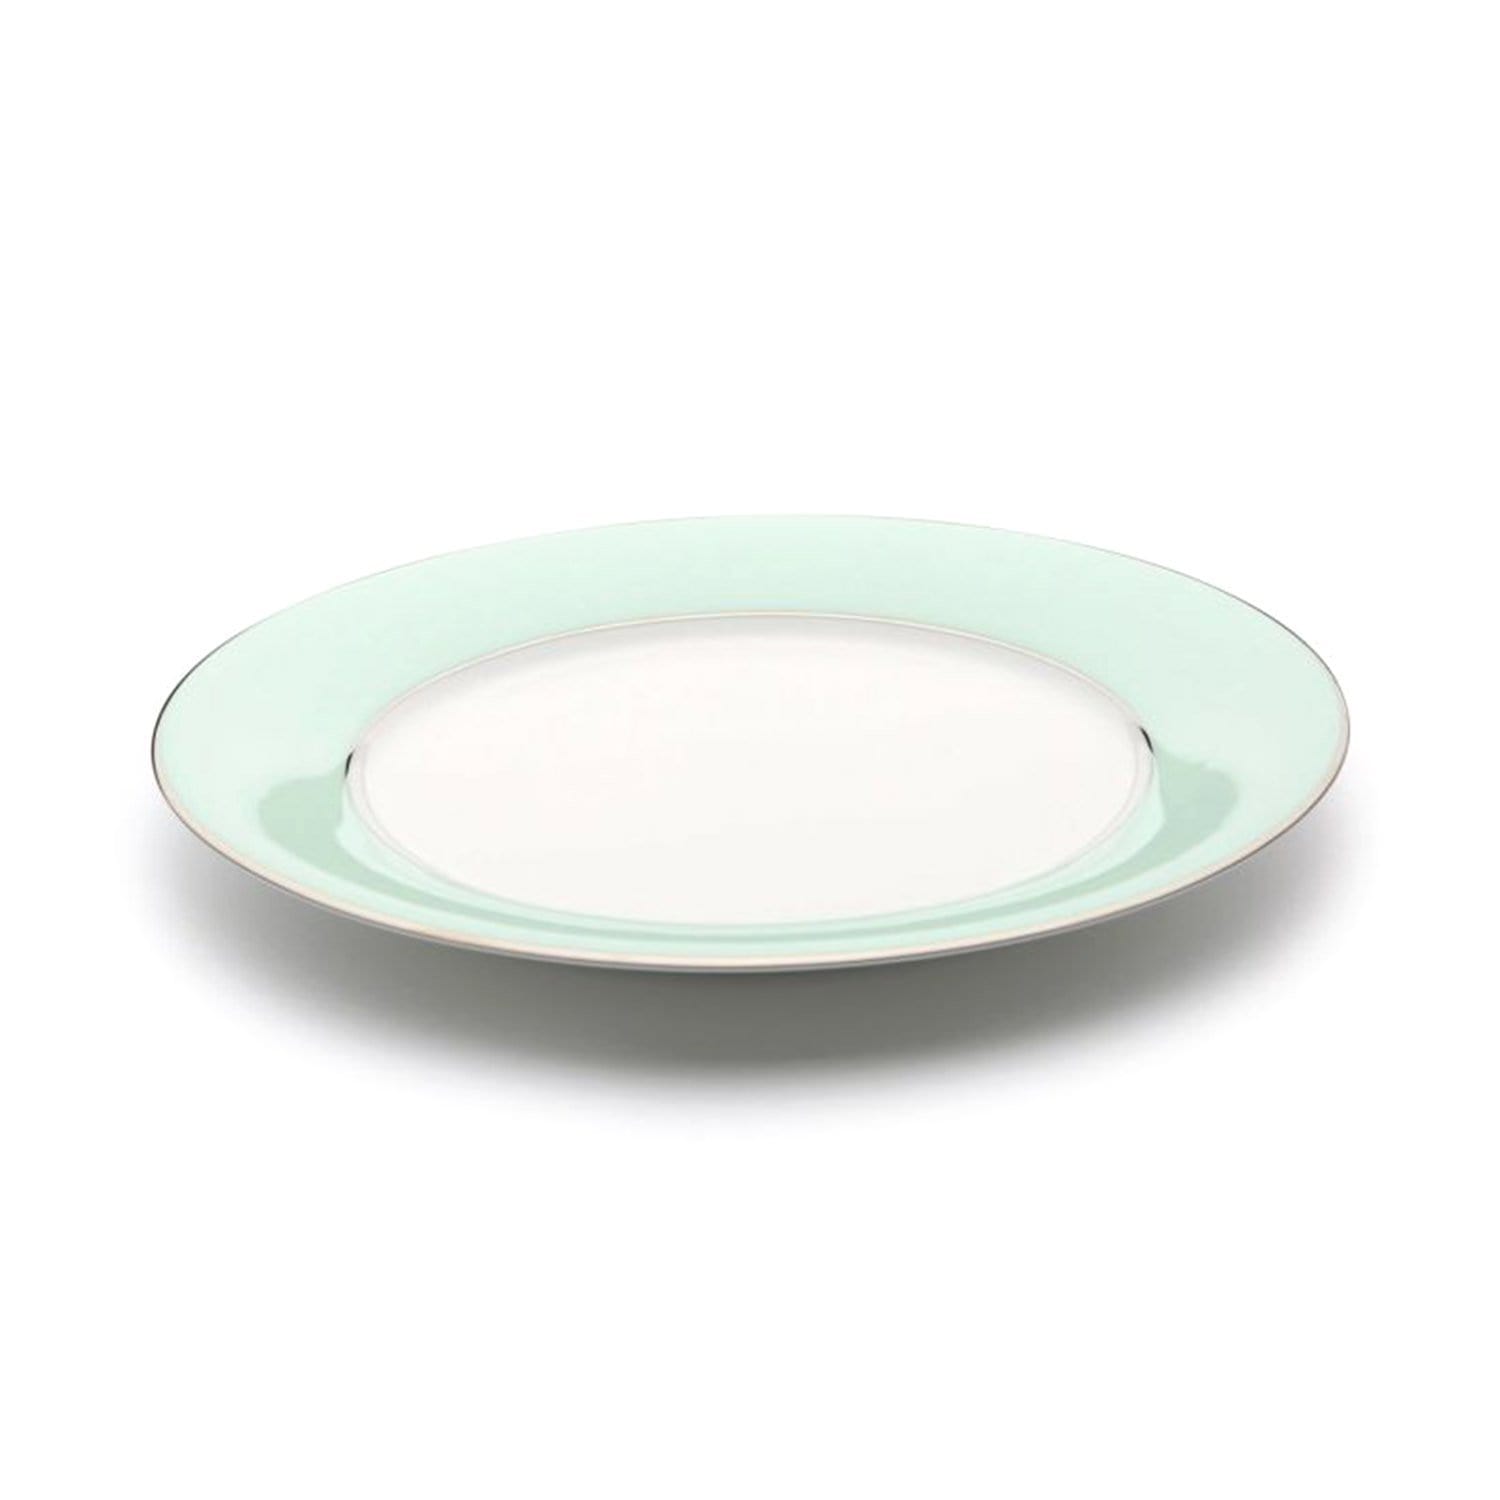 Dankotuwa Meldy Dinner Plate - White and Green, 690 g - MELDYG-0520 - Jashanmal Home